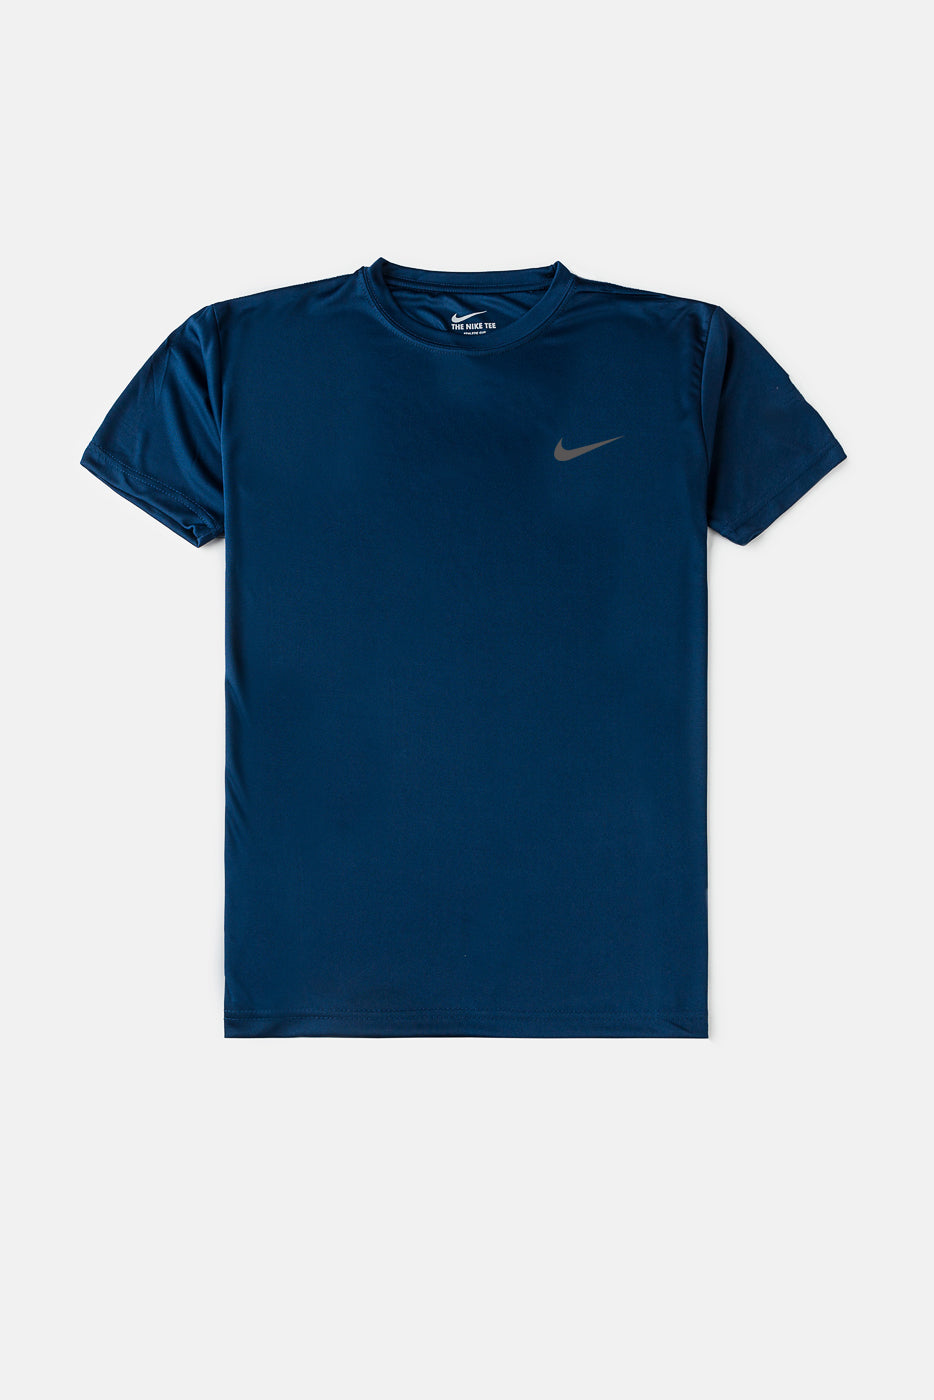 Nike Dri-FIT Navy Blue